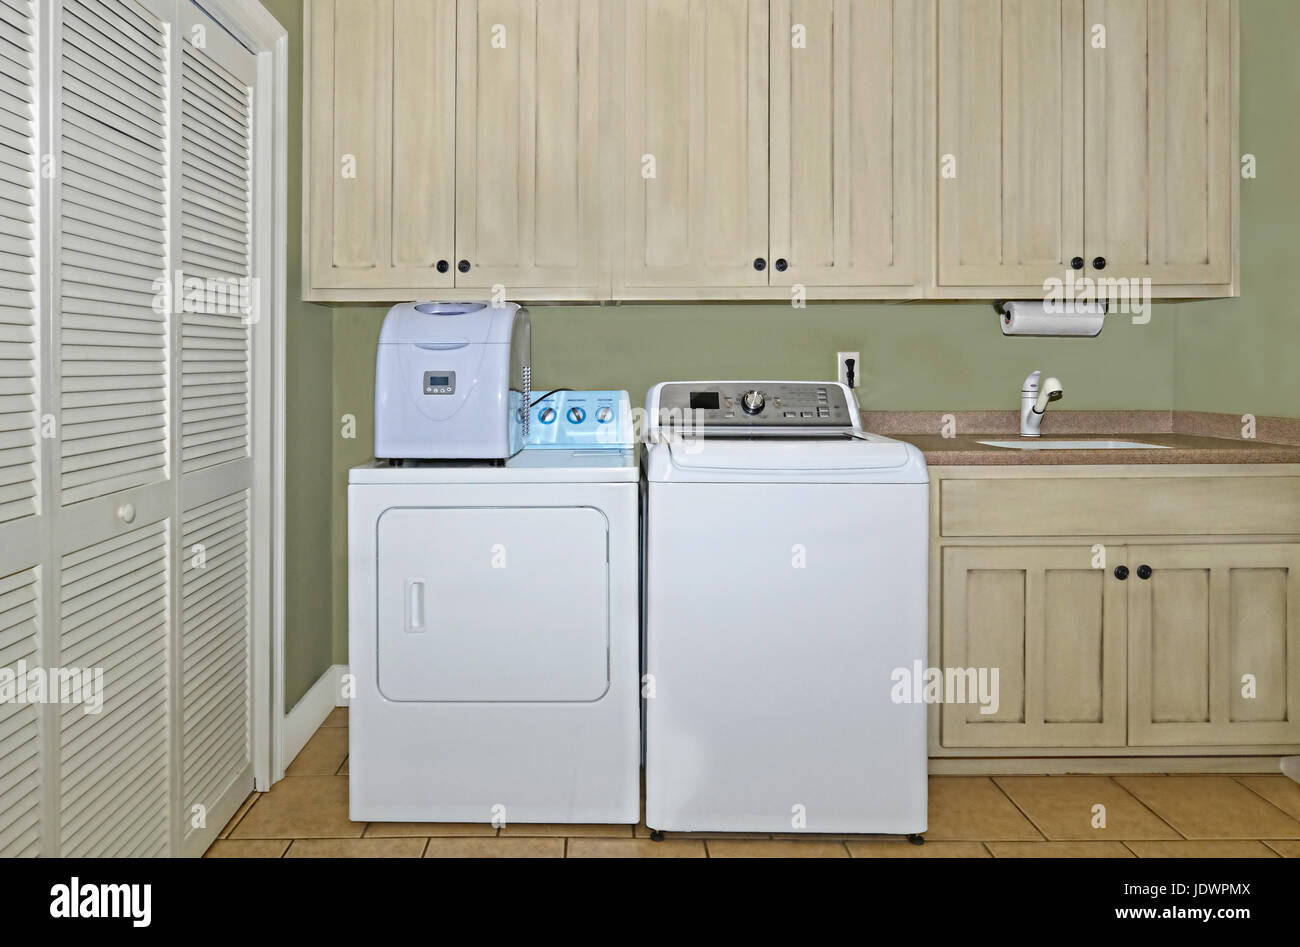 Una sala lavanderia con lavatrice, asciugatrice,fabbricatore di ghiaccio,lavabo,armadi,e un area dispensa. Gli armadietti hanno una leggera finitura anticato su di essi. Foto Stock